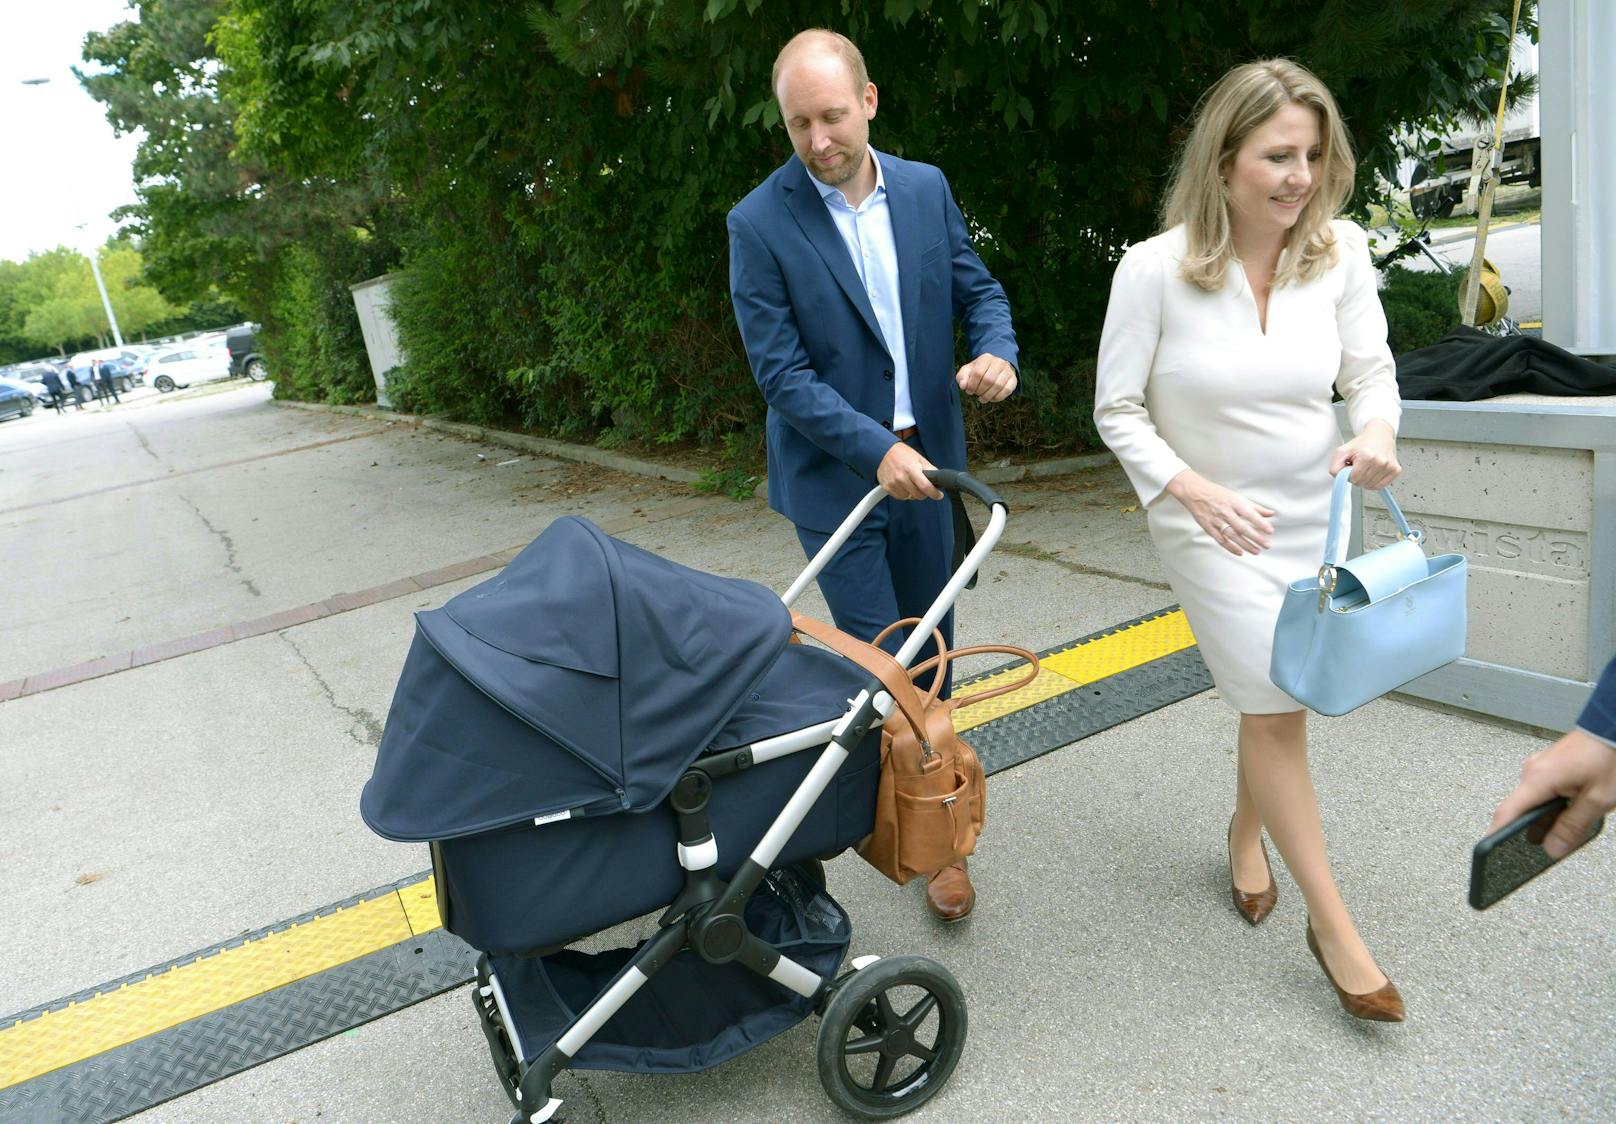 Familienministerin Susanne Raab kam in Begleitung ihres Mannes und mit Baby.&nbsp;